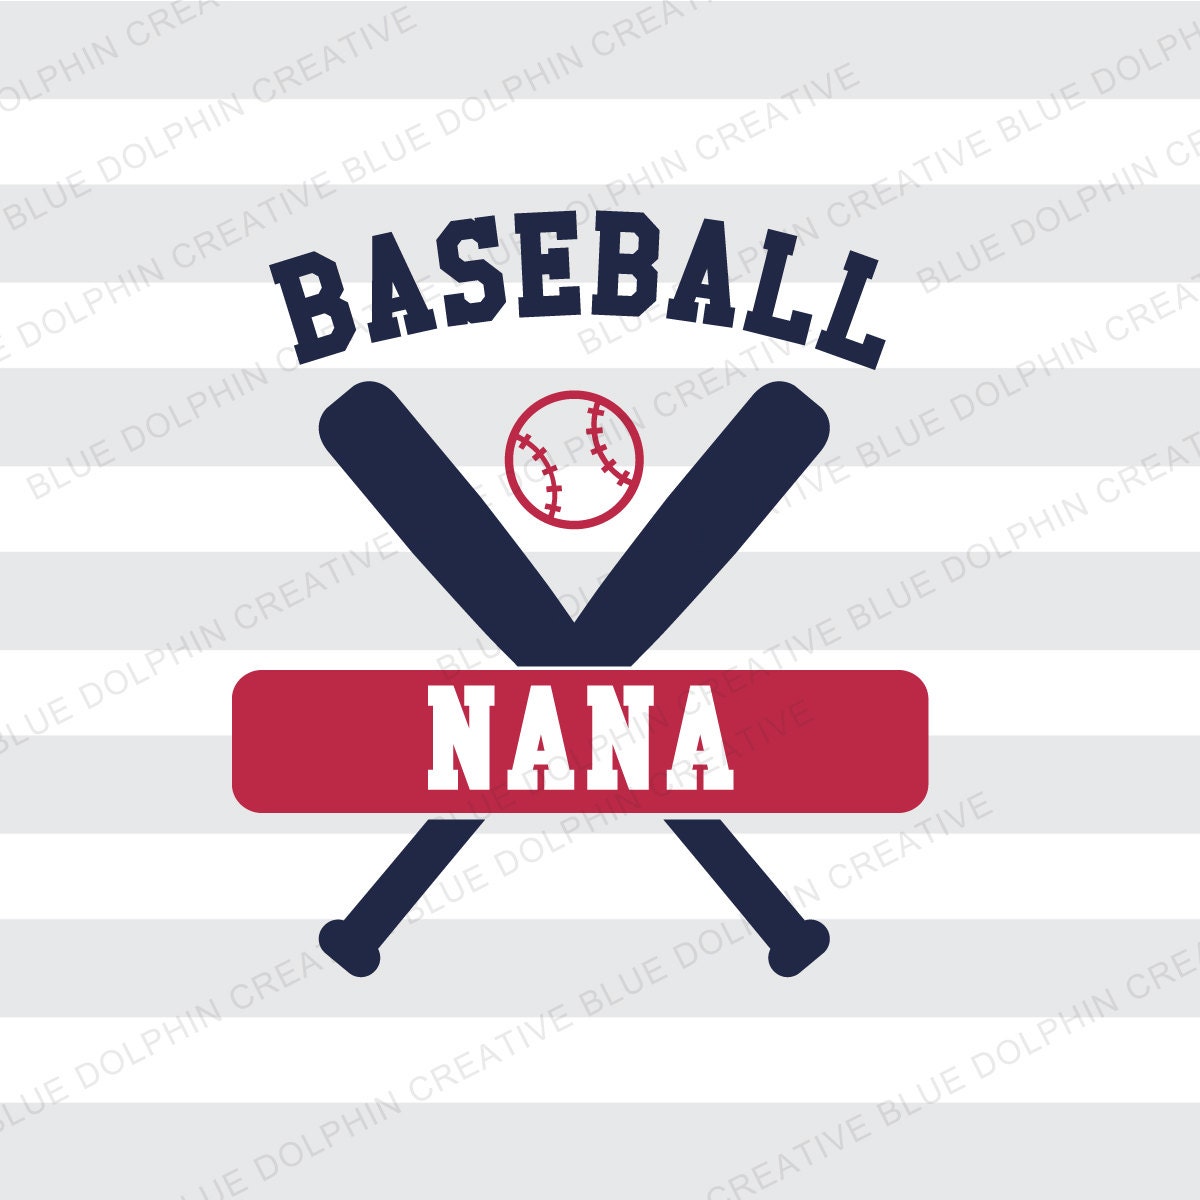 Download Baseball Nana SVG png pdf / baseball bats by ...